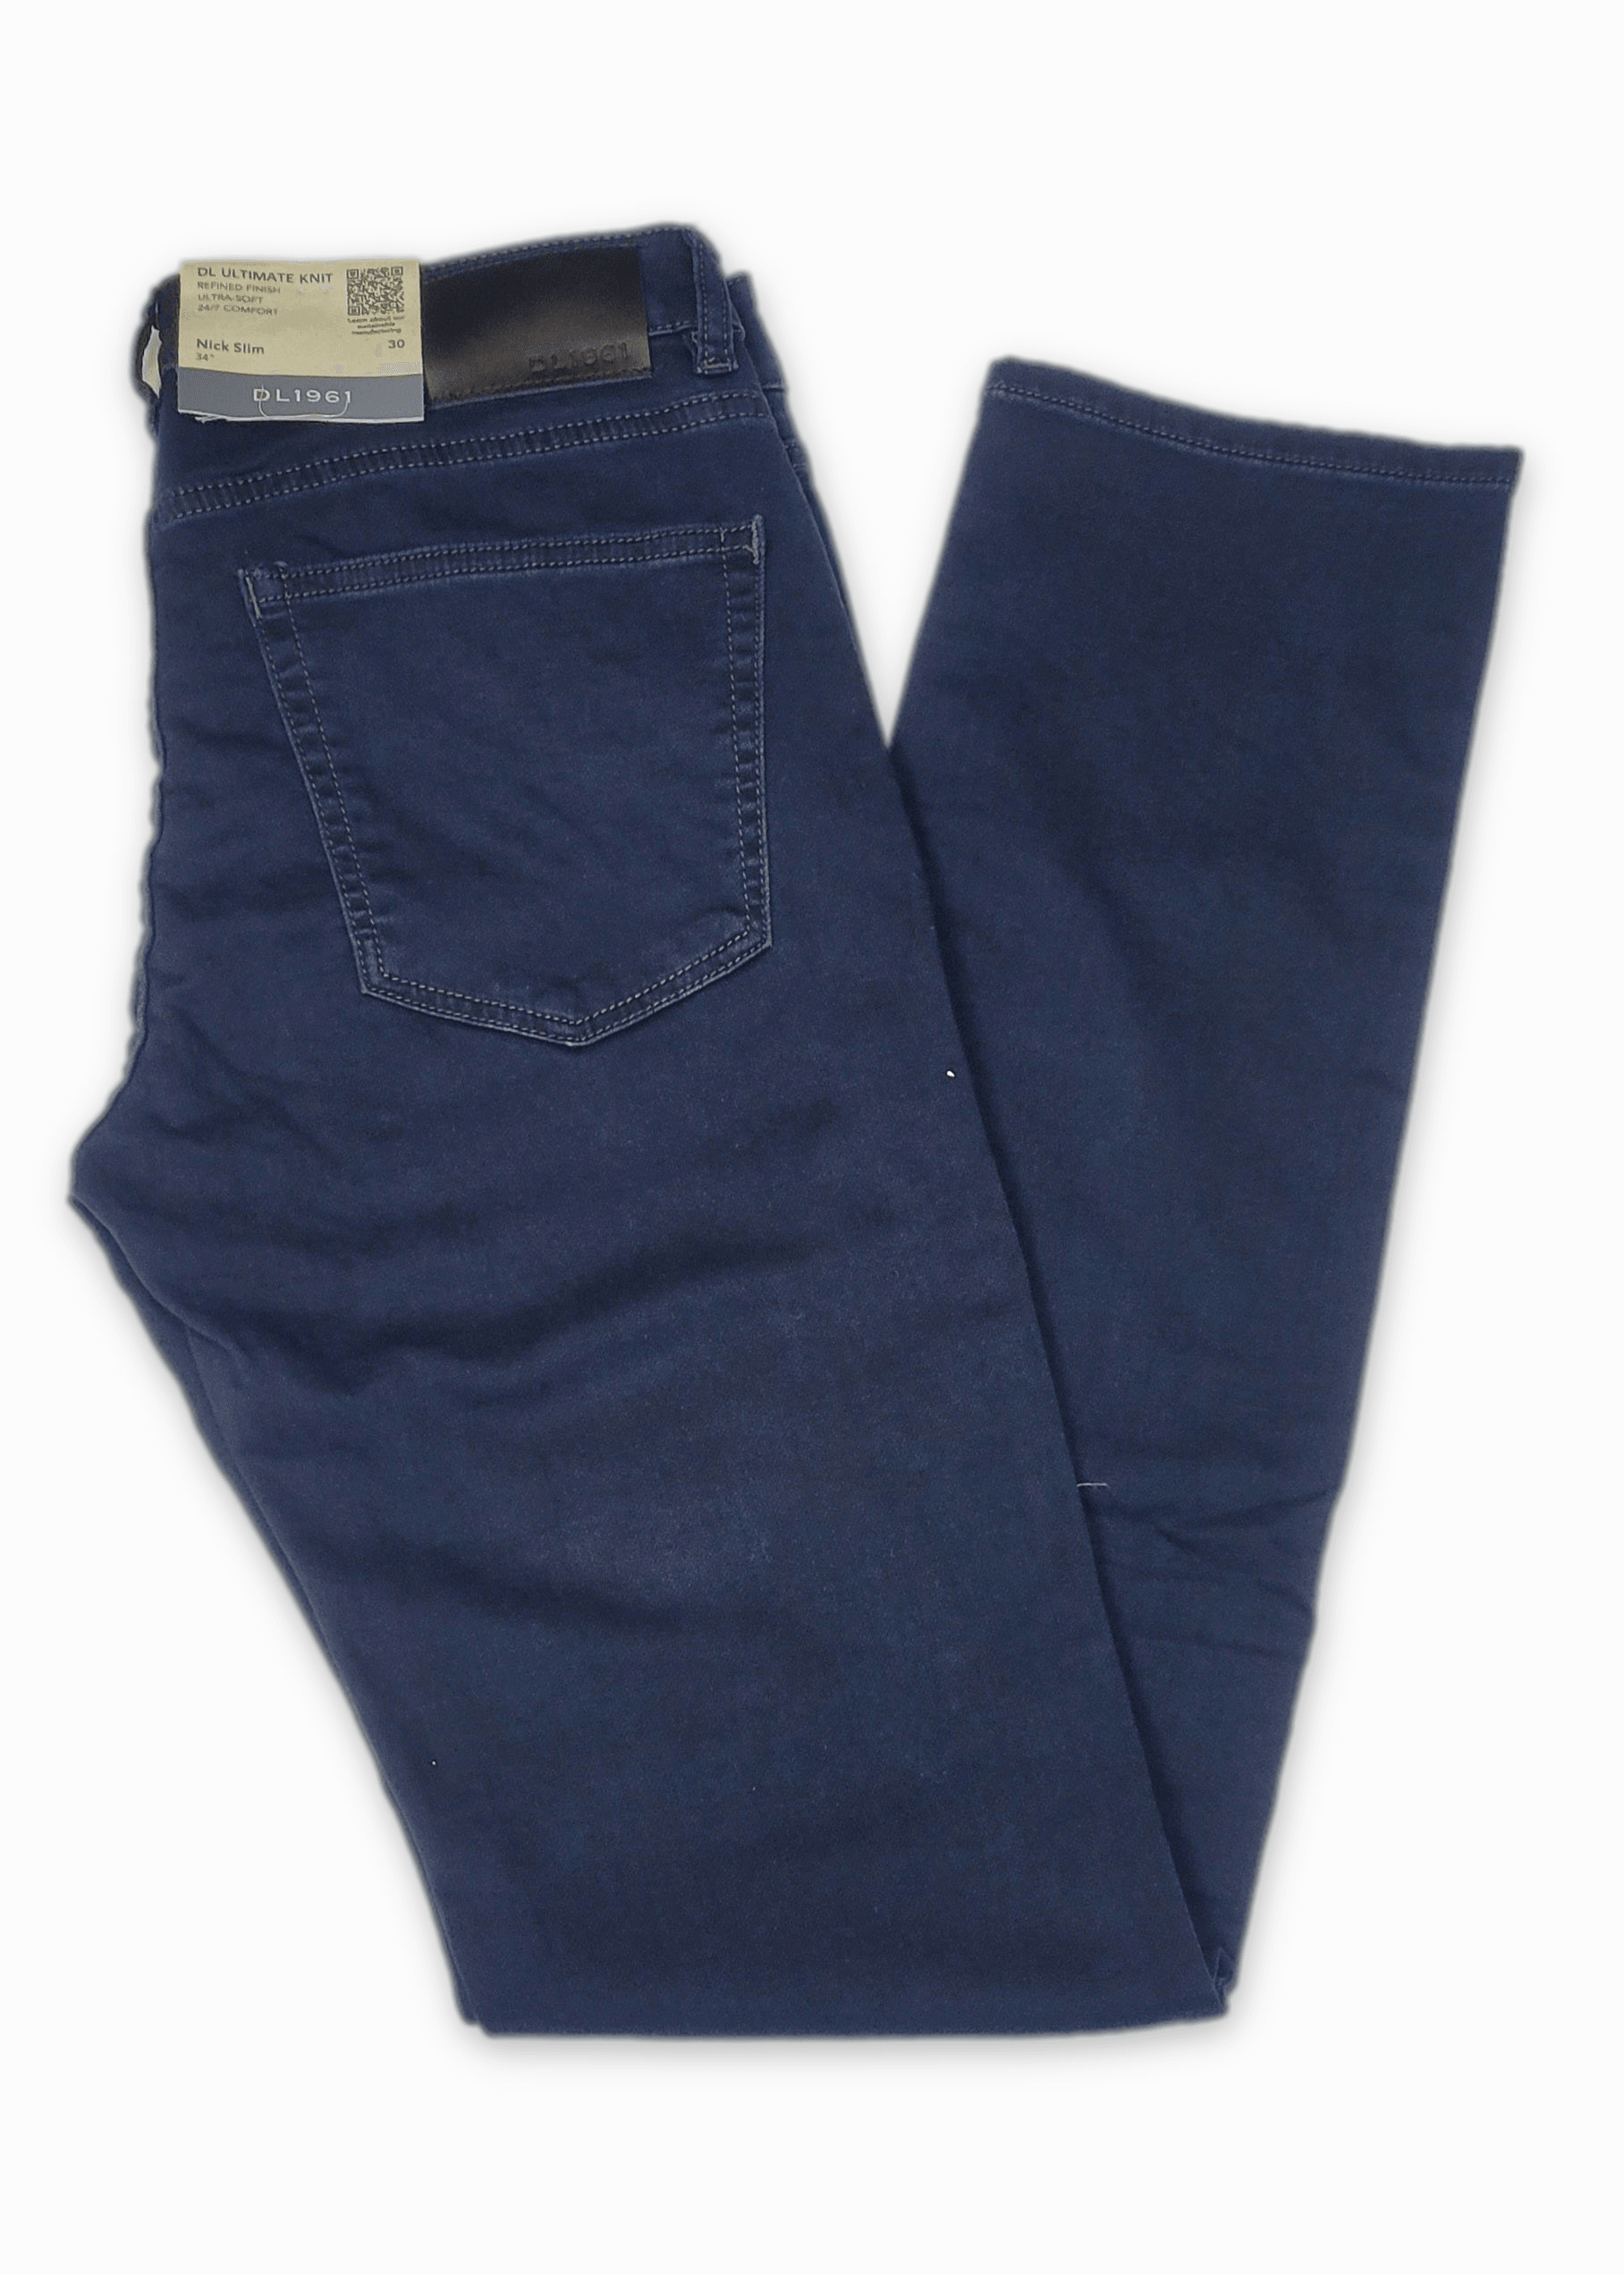 Laflamme- Jeans de twill marine - DL1961